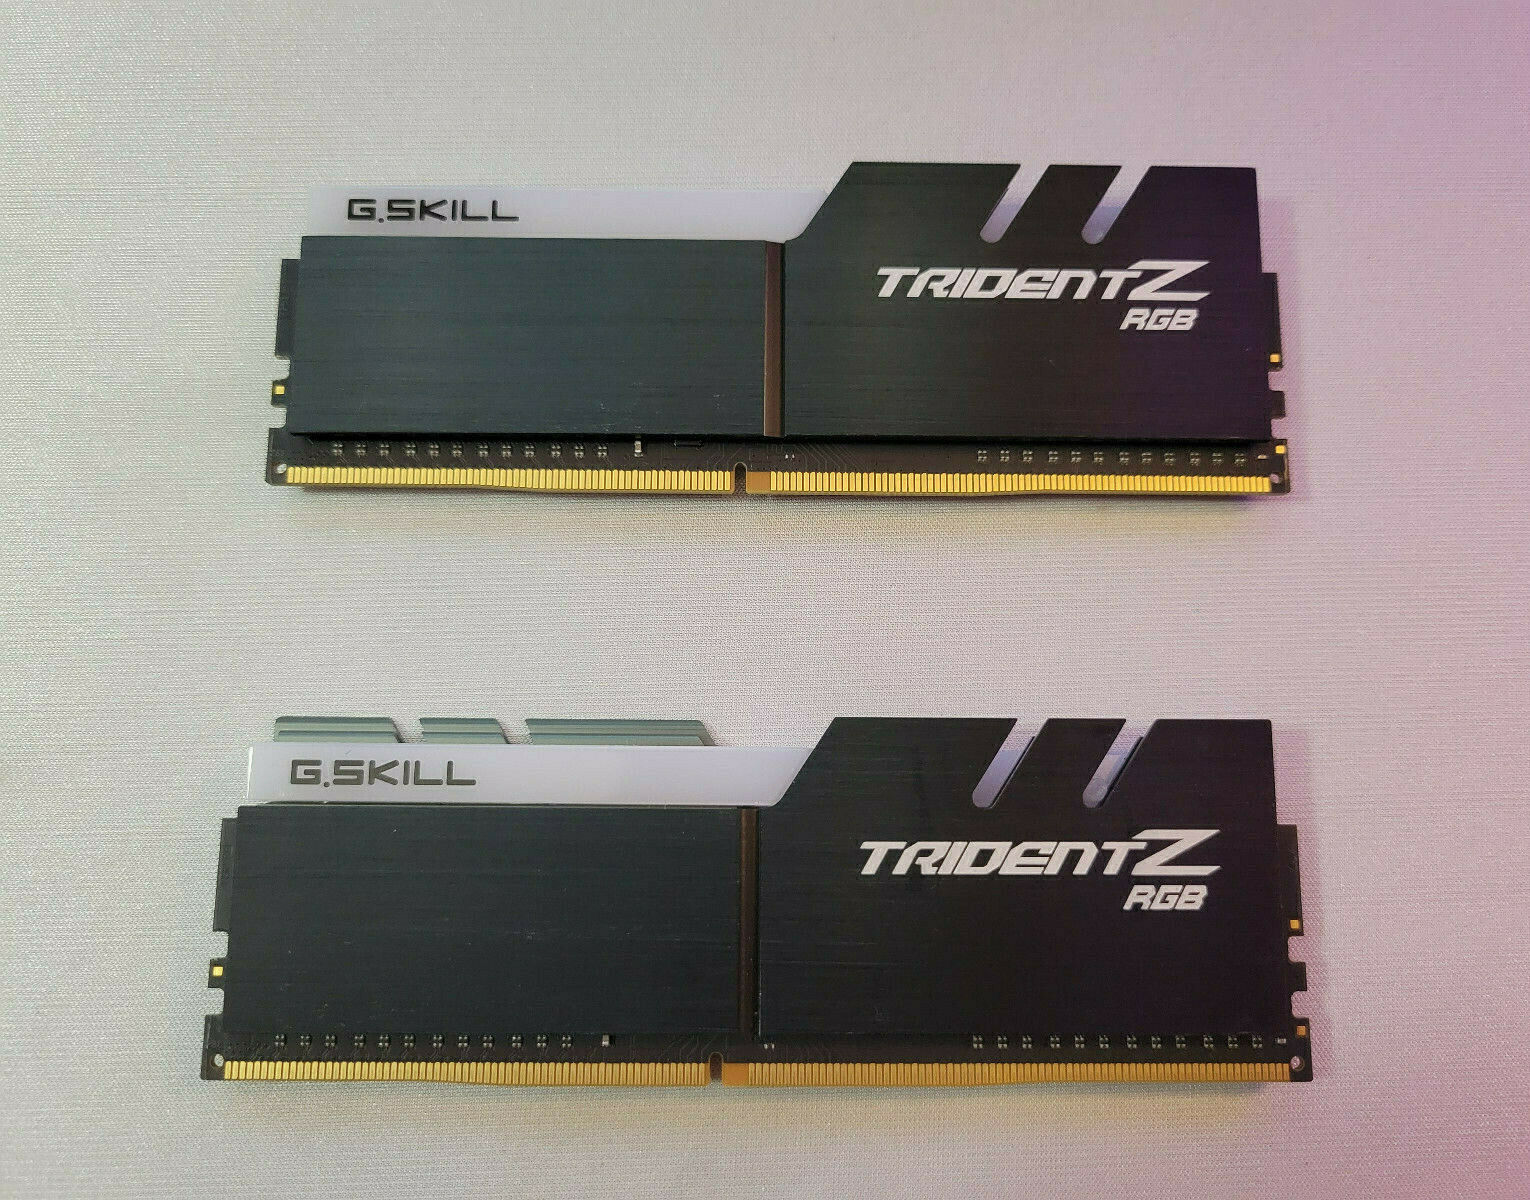 G.SKILL TridentZ RGB Series 16GB (2 x 8GB) SDRAM DDR4 3200 F4-3200C16D-16GTZR